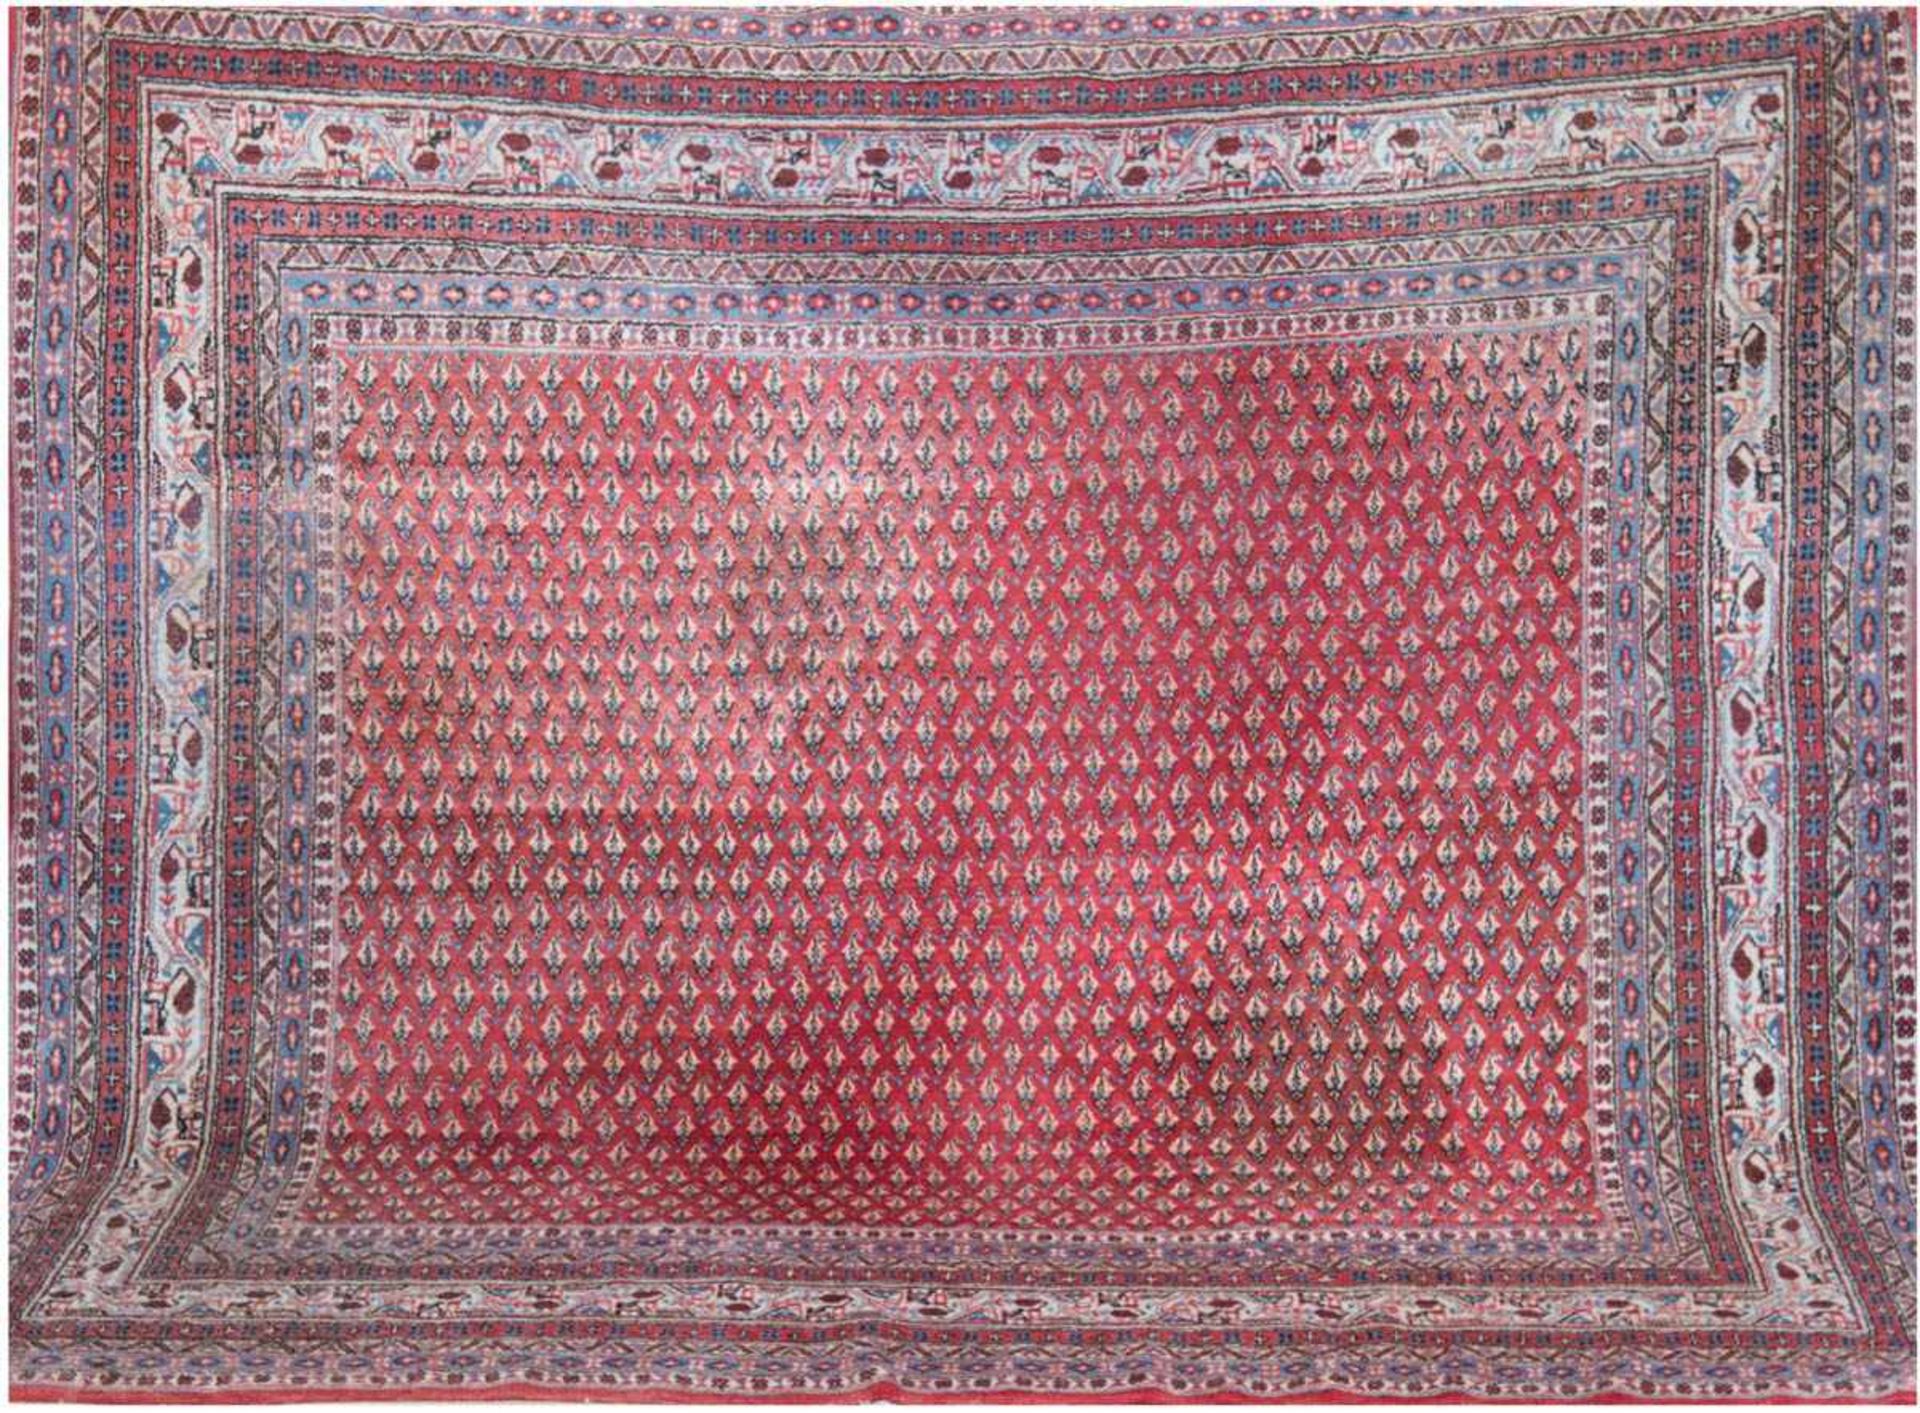 Sarough Mir, Iran, rotgrundig mit zentralem Muster, Kanten belaufen, verschmutzt, 226x211cm- - -23.